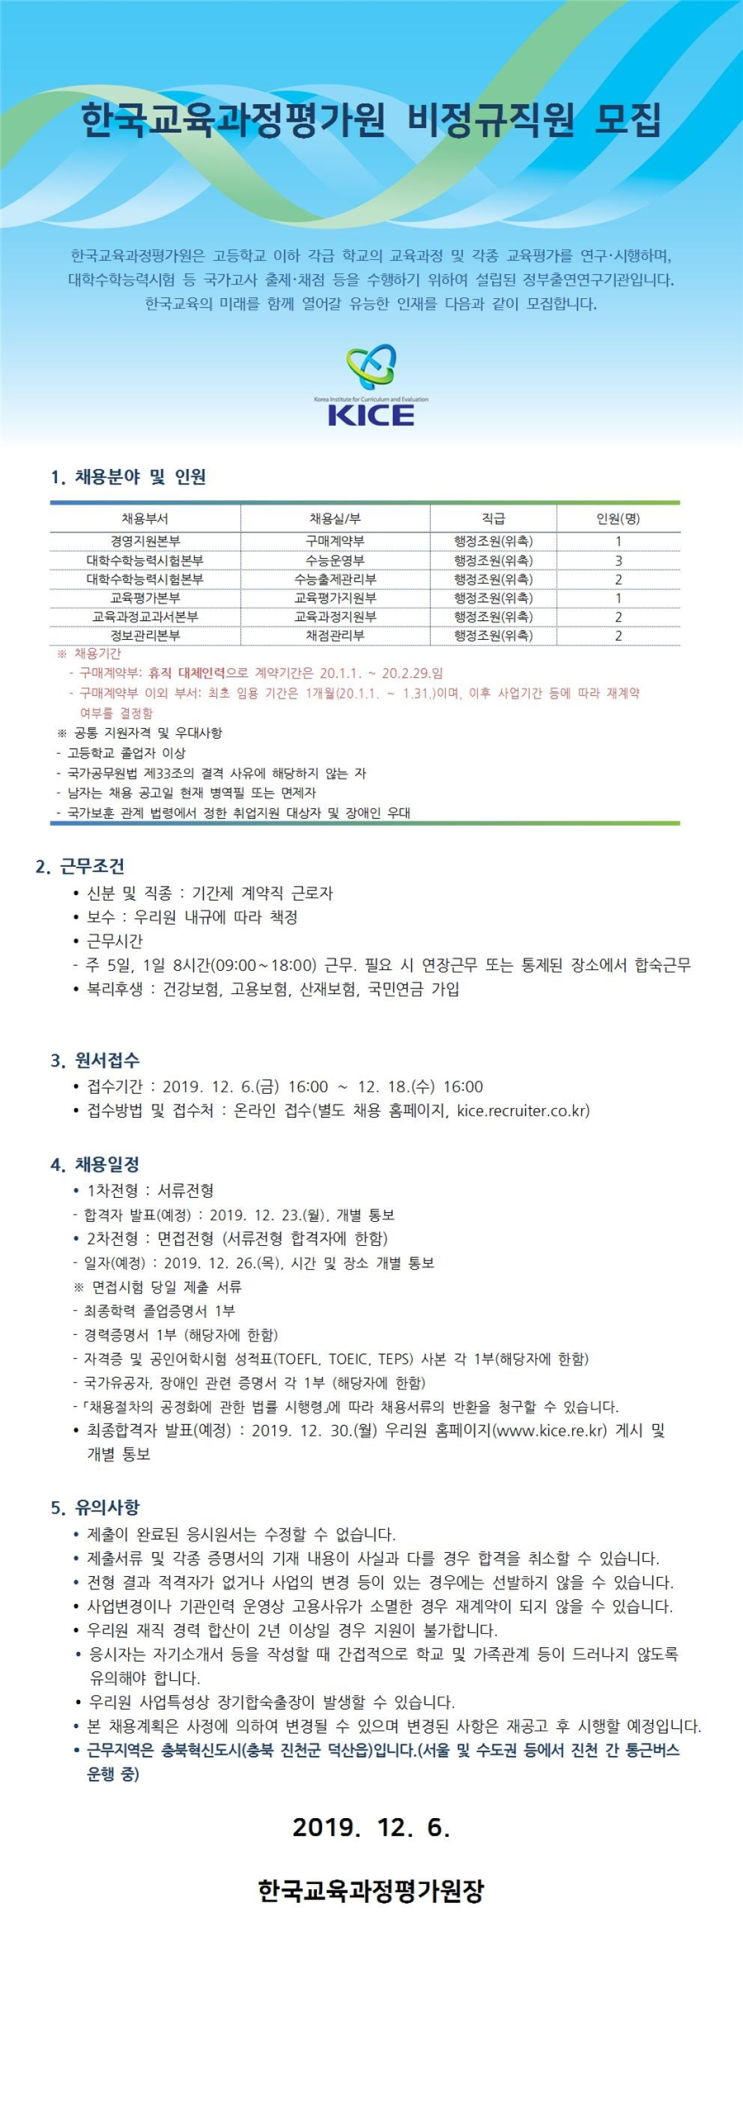 [채용][한국교육과정평가원] 2020년 1월 비정규직원 모집_위촉행정원